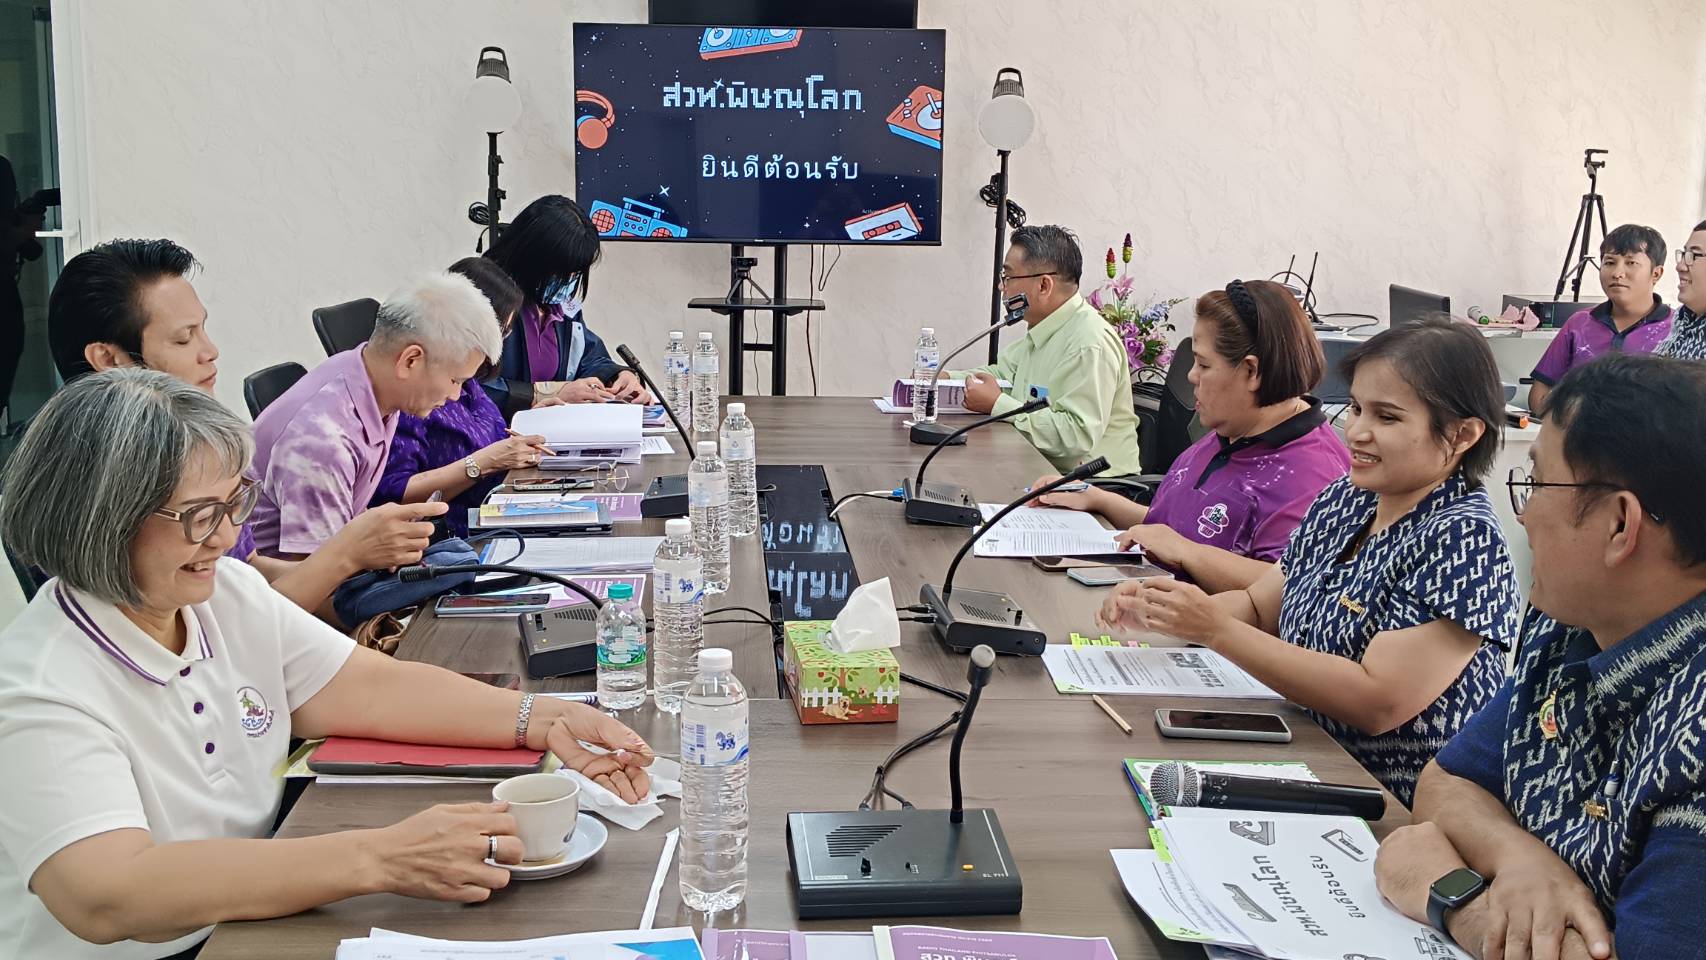  สวท.พิษณุโลก รับการตรวจประเมินผลการปฏิบัติงานและคัดเลือกสถานีวิทยุกระจายเสียงแห่งประเทศไทย ดีเด่น ระดับเขต ประจำปี 2566